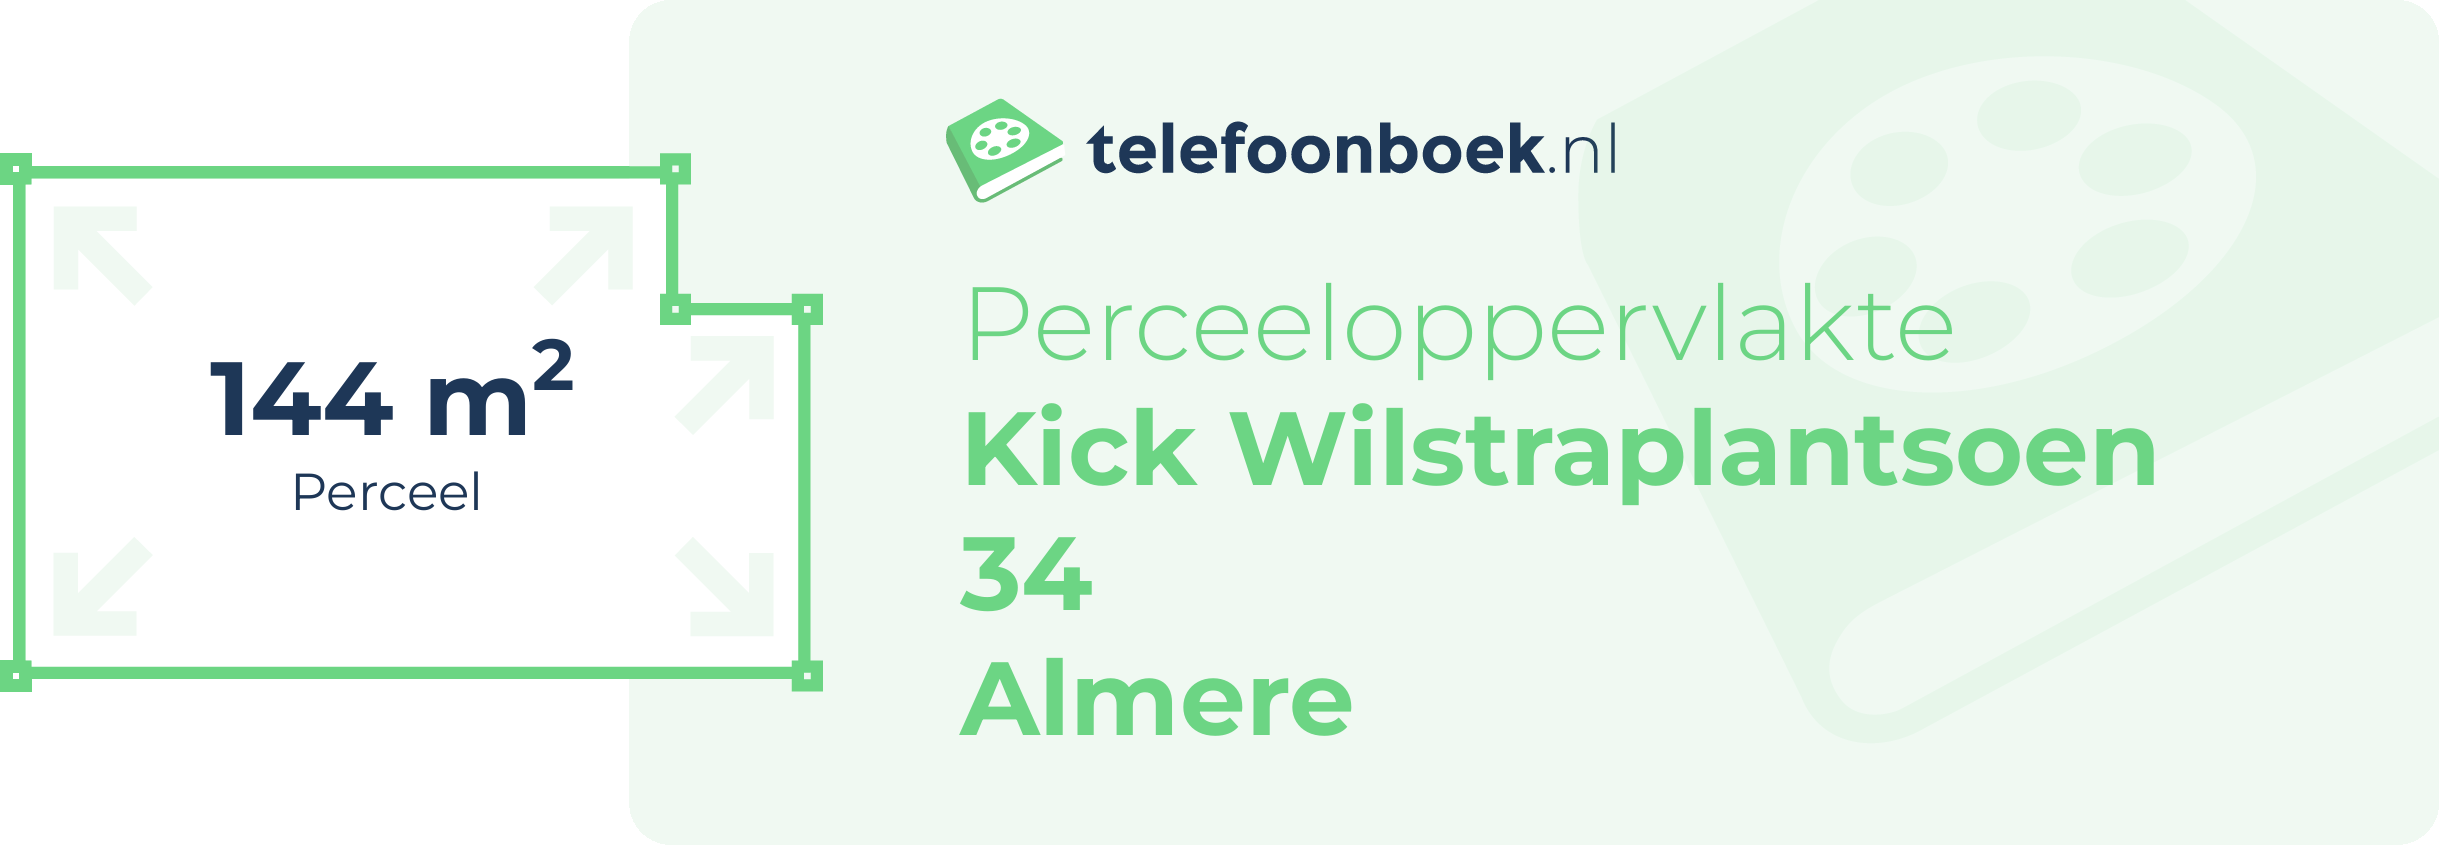 Perceeloppervlakte Kick Wilstraplantsoen 34 Almere